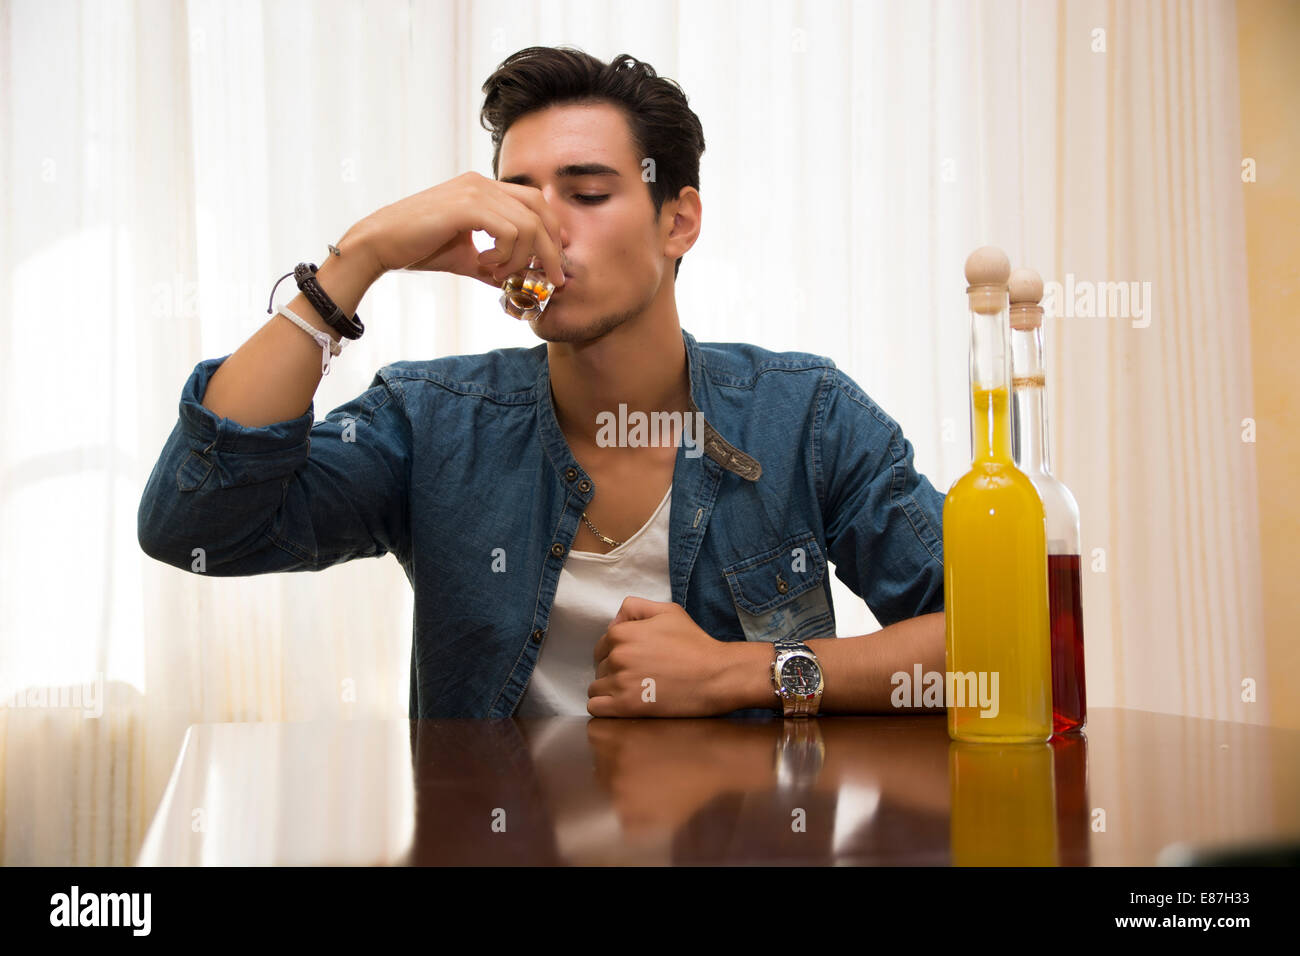 Giovane uomo seduto a bere da solo ad un tavolo con due bottiglie di liquori accanto lui sorseggiando dal colpo di vetro di affogare il suo dolore Foto Stock